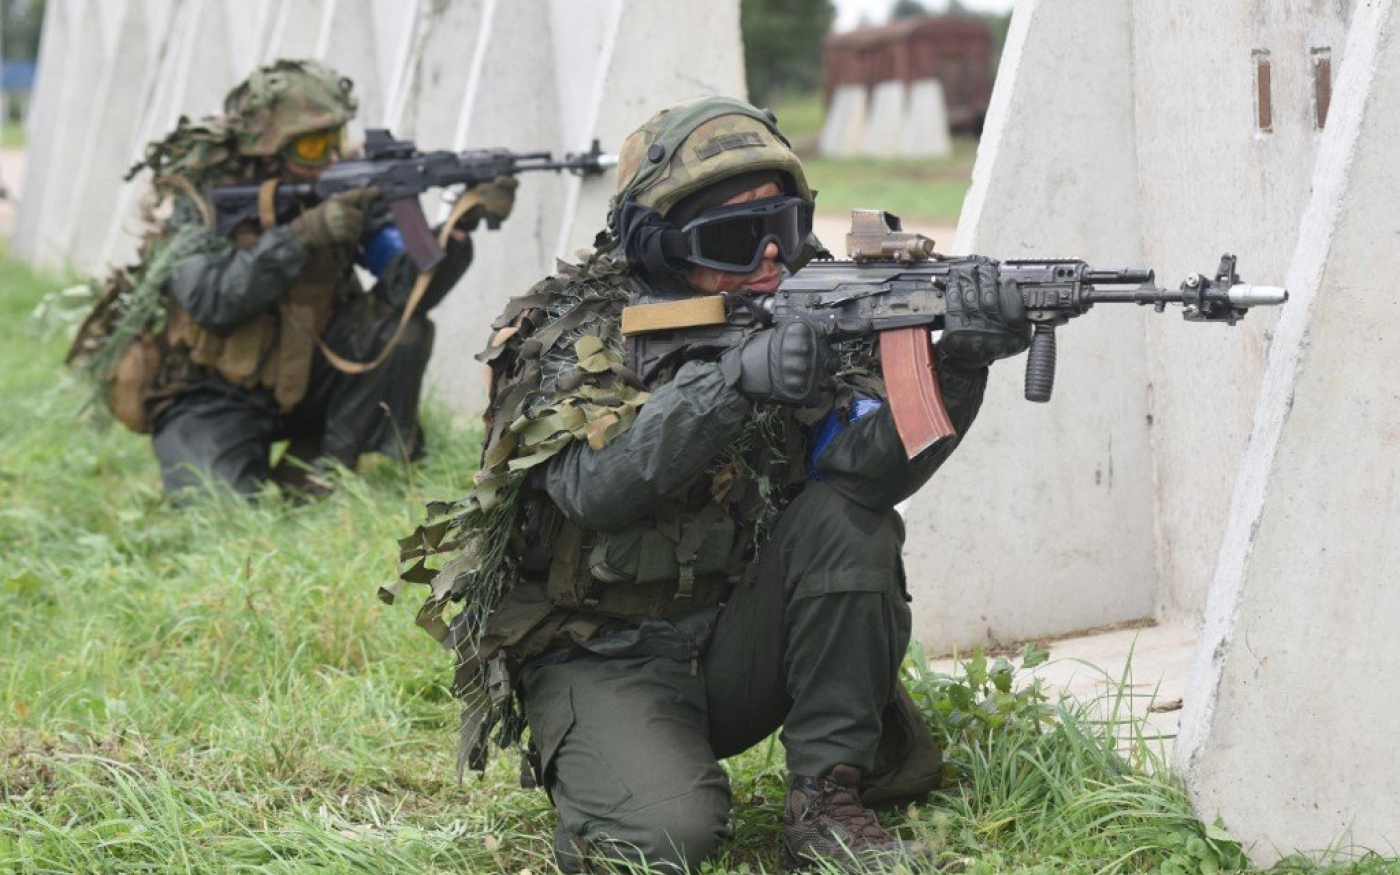 Des militaires ukrainiens participent aux exercices militaires conjoints Rapid Trident avec les États-Unis et d’autres pays de l’OTAN, près de Lviv, le 24 septembre 2021 (AFP)